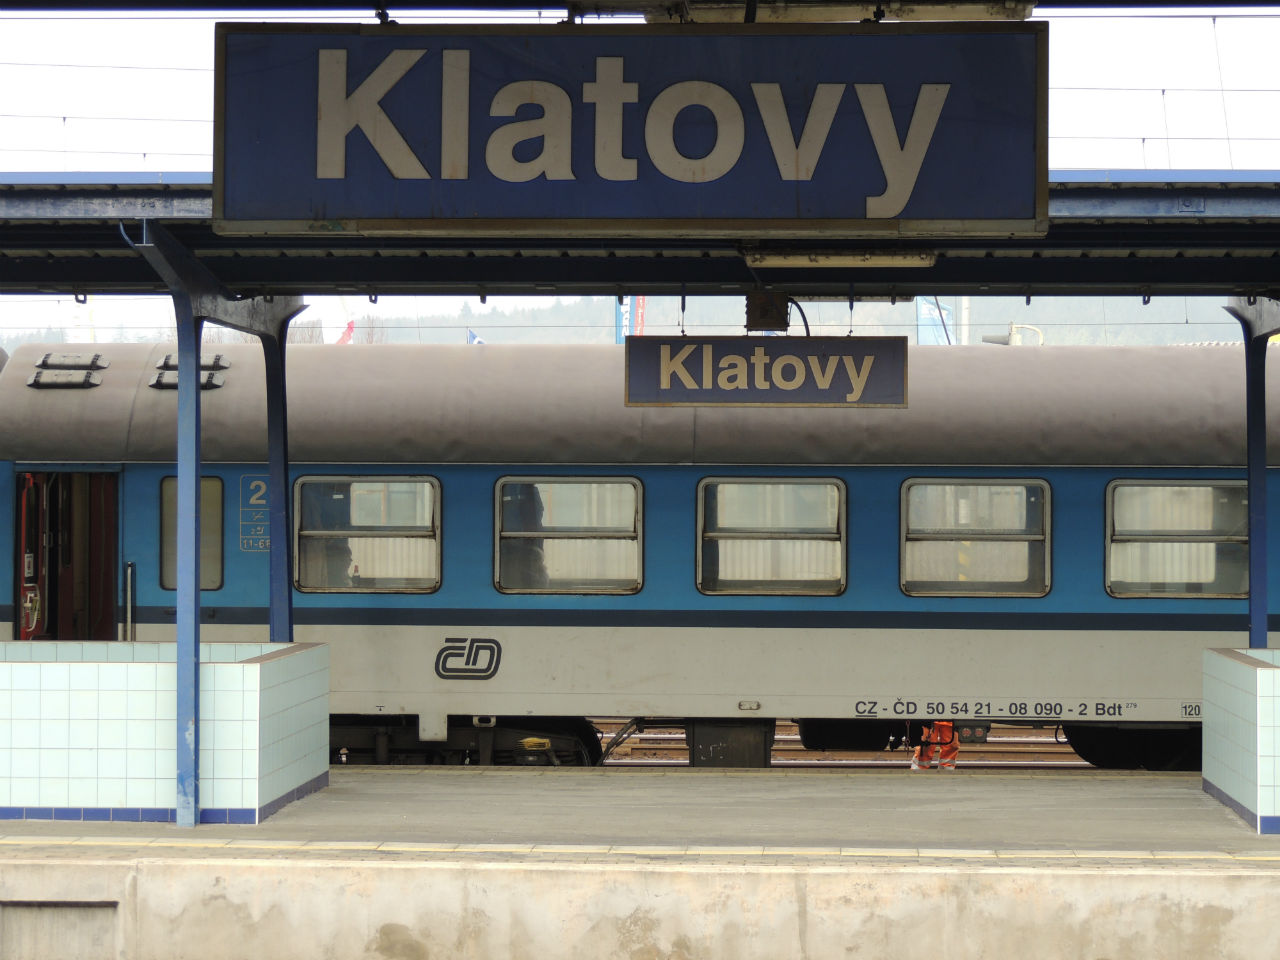 Klatovy állomáson cserélték a Plehácsot Búvárra – itt még ködös, szürke időjárás volt... (a képre kattintva galéria nyílik a szerző fotóiból)